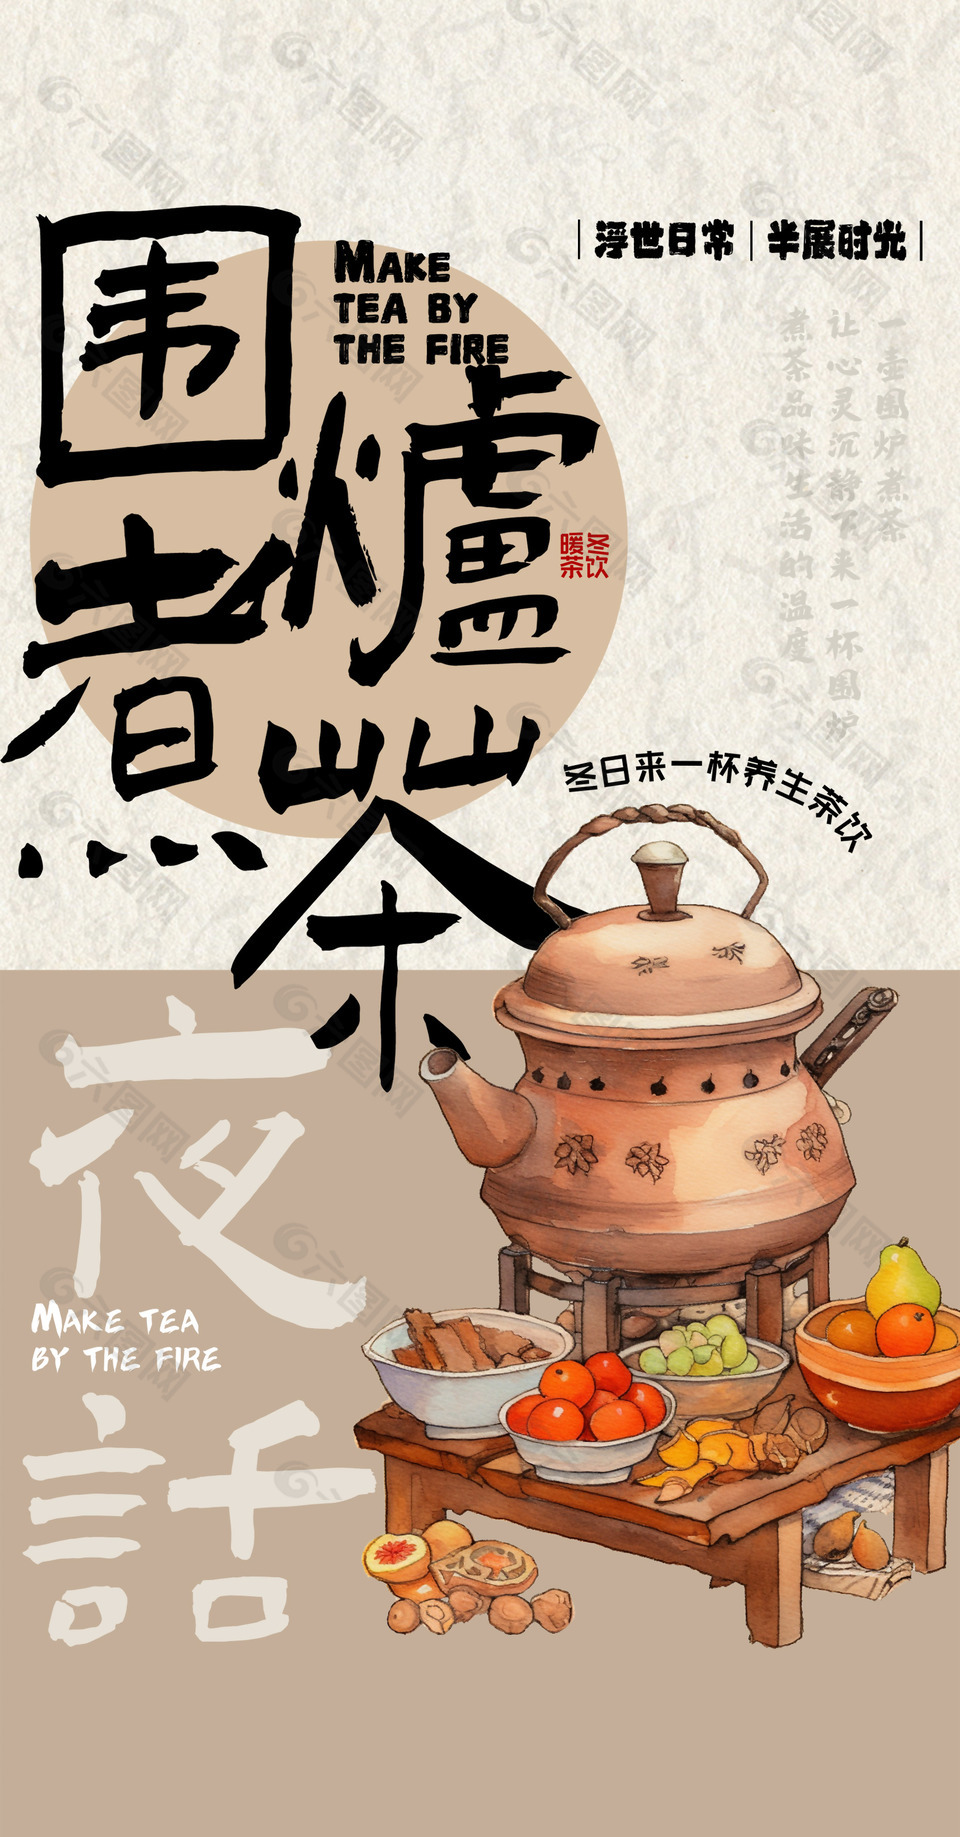 围炉煮茶手绘创意浮世日常主题海报